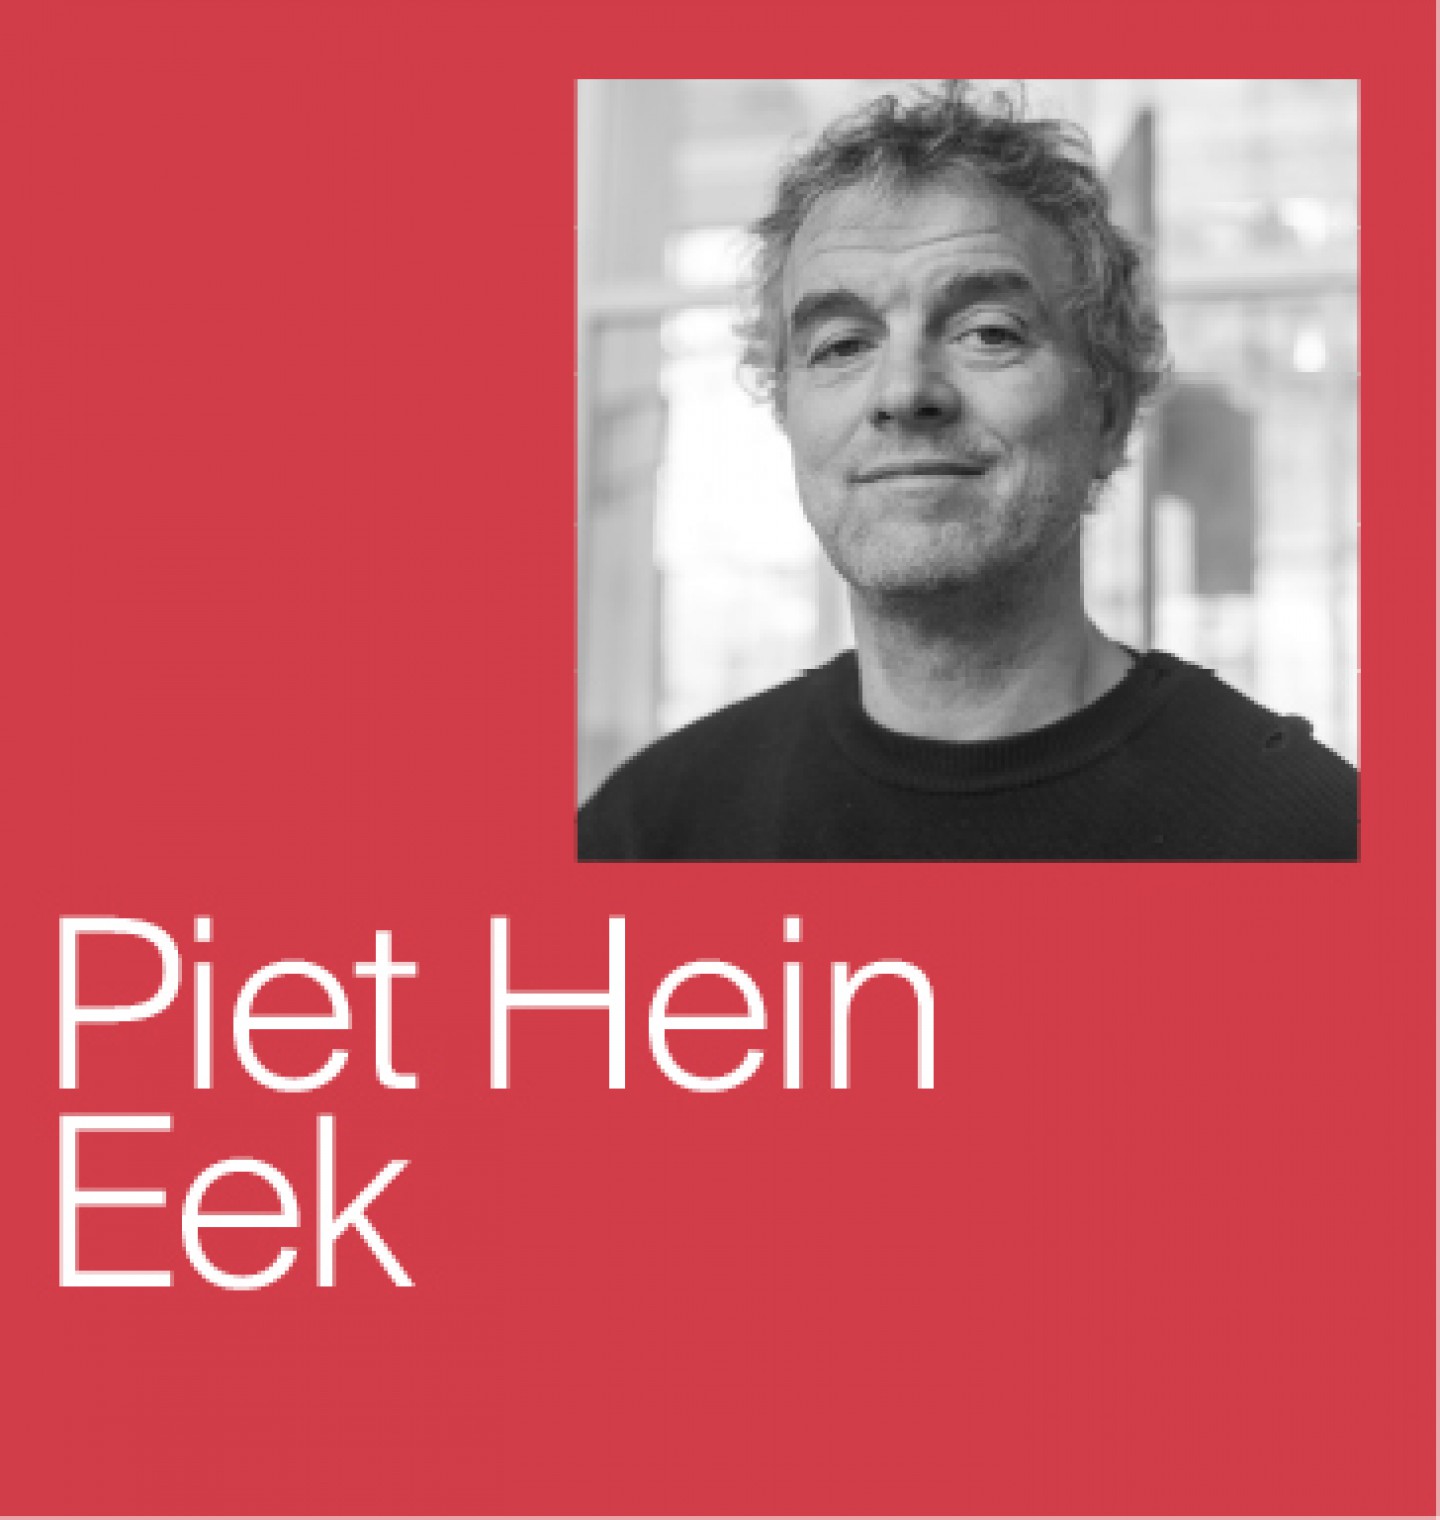 Piet Hein Eek 